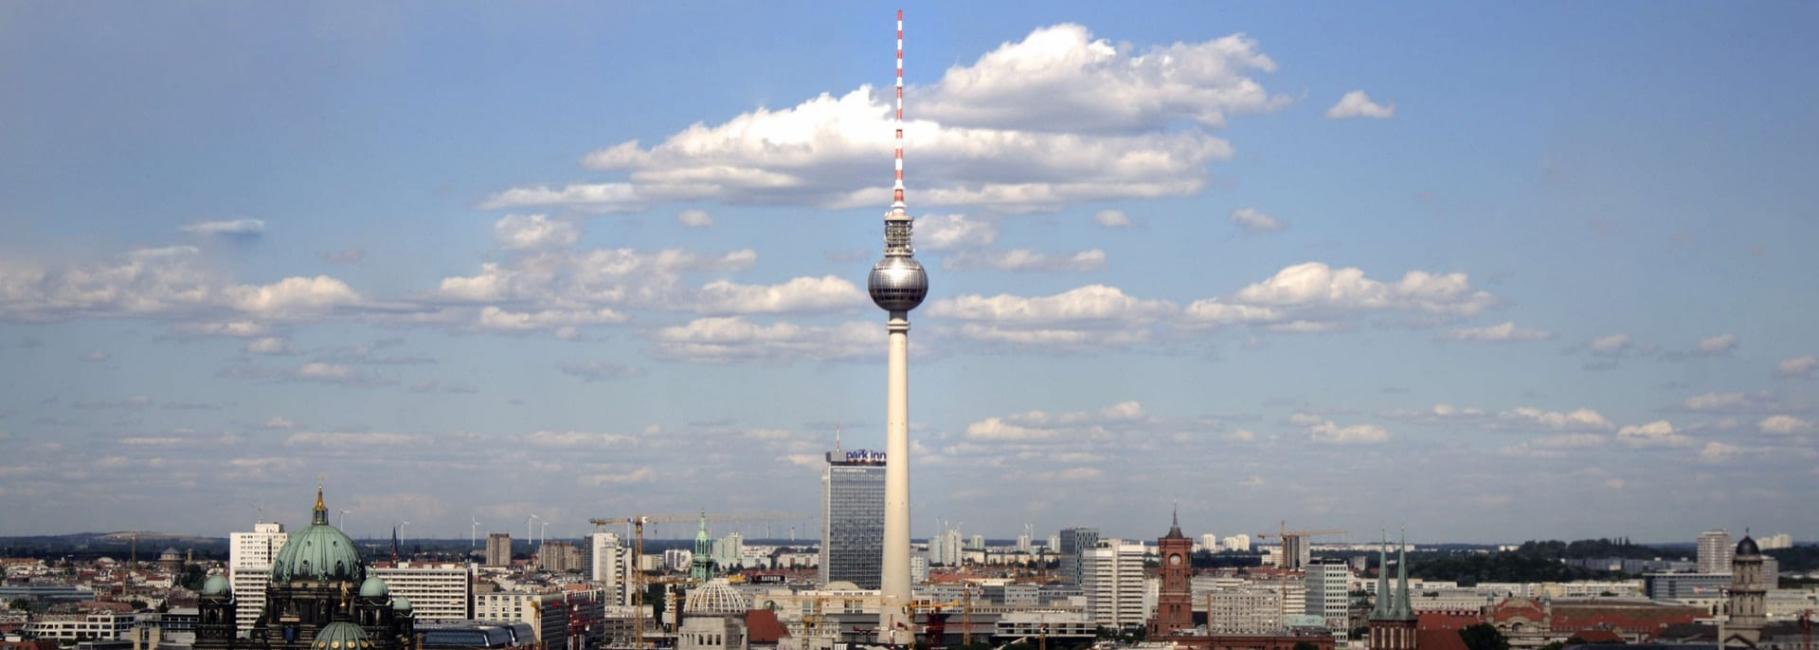 berlin media trip header slk fe